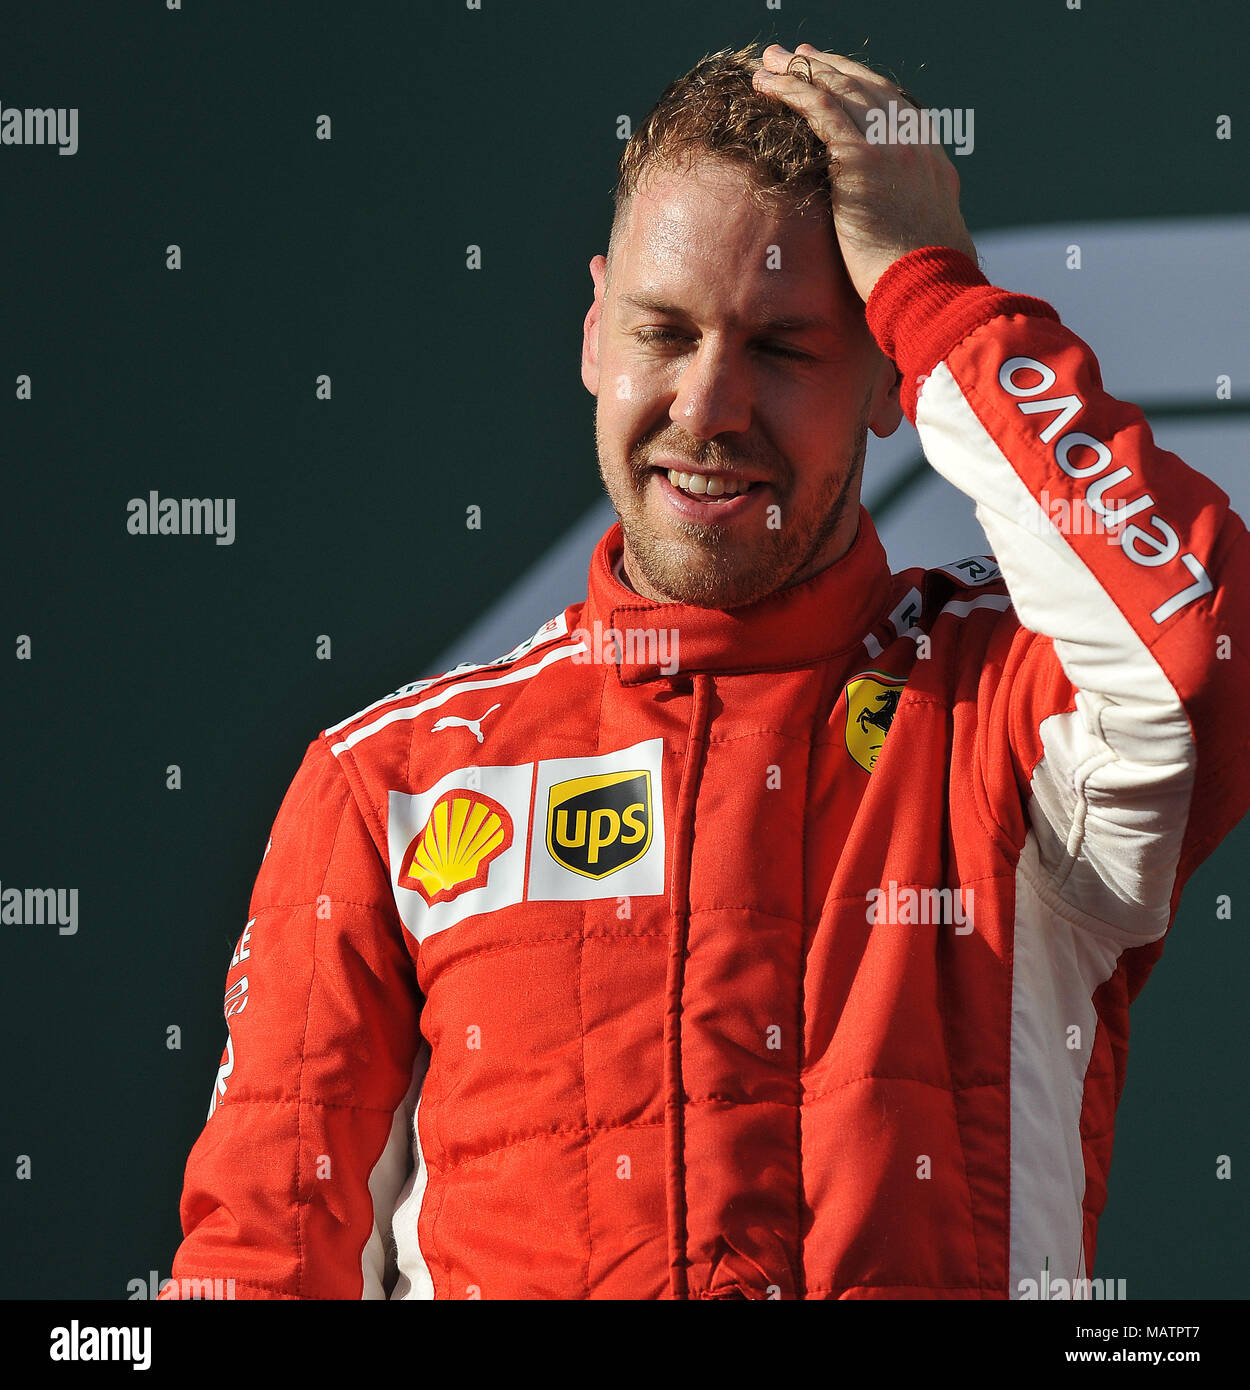 Gara vincitore Sebastian Vettel della Scuderia Ferrari. Il giorno 4, il giorno di gara del 2018 Formula 1 Rolex Australian Grand Prix che si svolgerà sul circuito di Albert Park di Melbourne, Victoria il 25 marzo 2018. Foto Stock